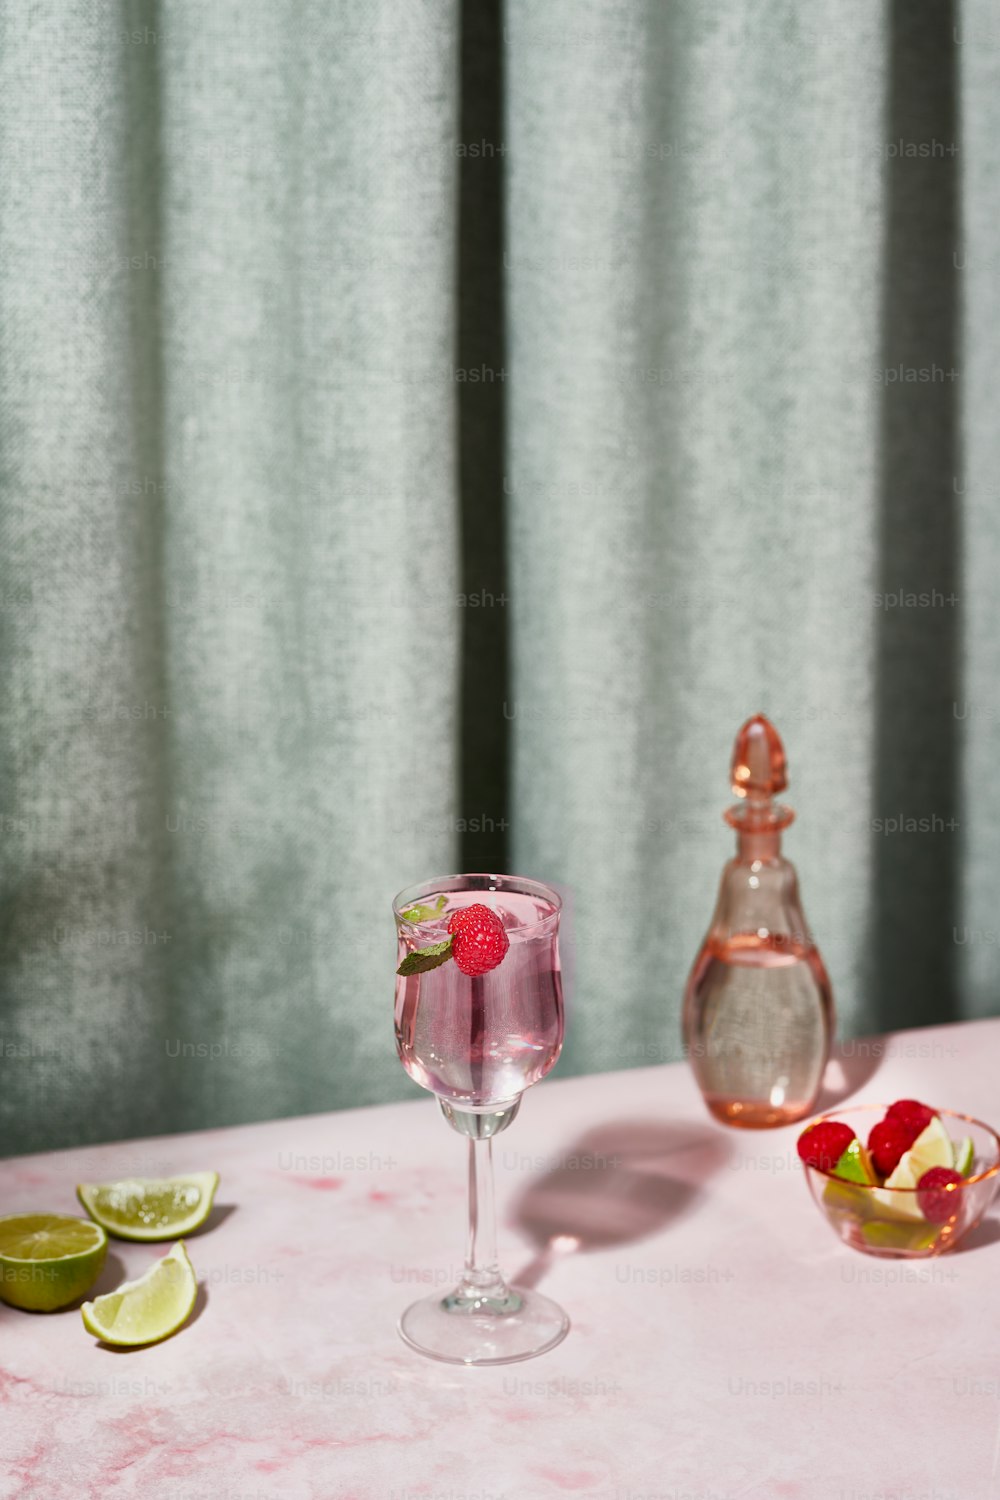 액체로 채워진 와인 잔을 얹은 분홍색 테이블